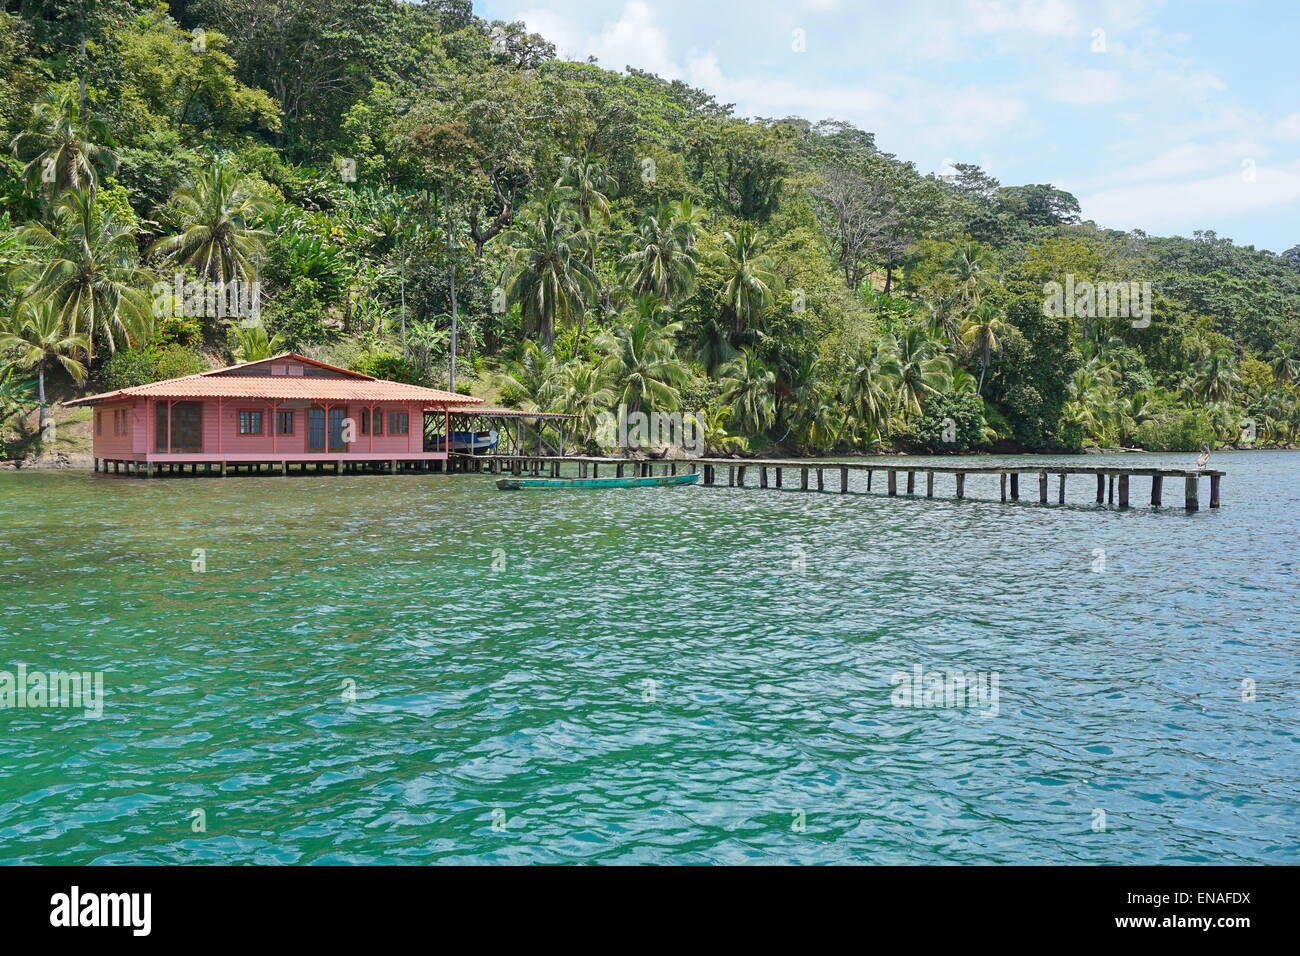 Casa tropicale con dock oltre il mare e la lussureggiante vegetazione tropicale sulla terraferma, Costa Caraibica di Panama, Bocas del Toro Foto Stock